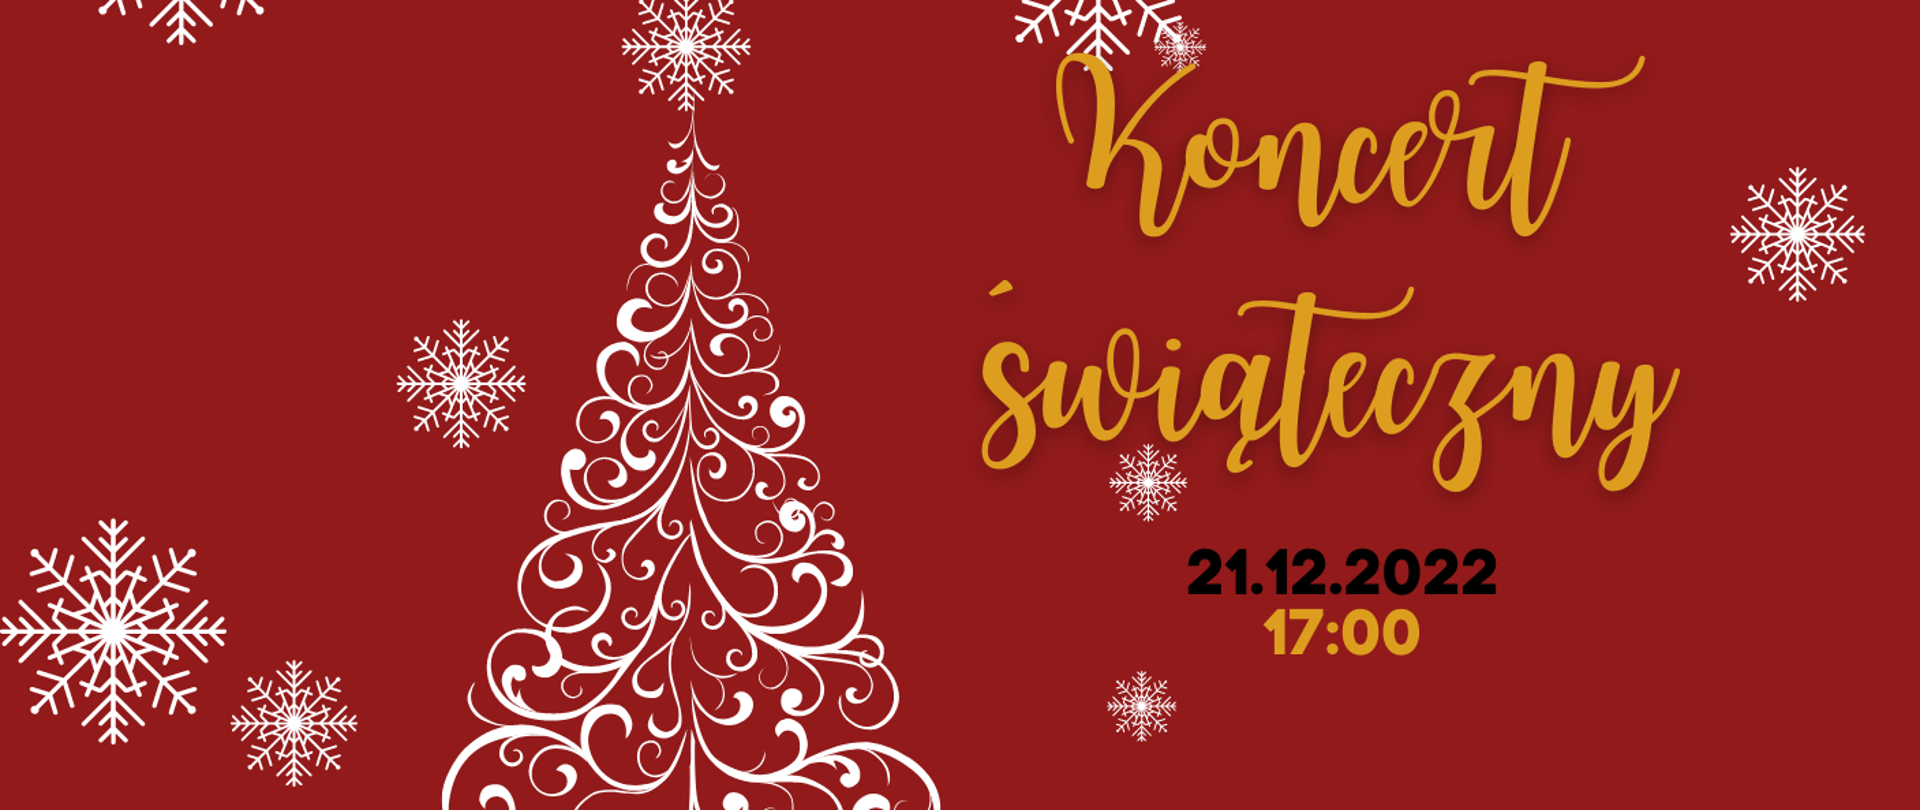 Zaproszenie na koncert świąteczny w dniu 21.12.22 Czerwone tło z białą choinką i białymi śnieżynkami